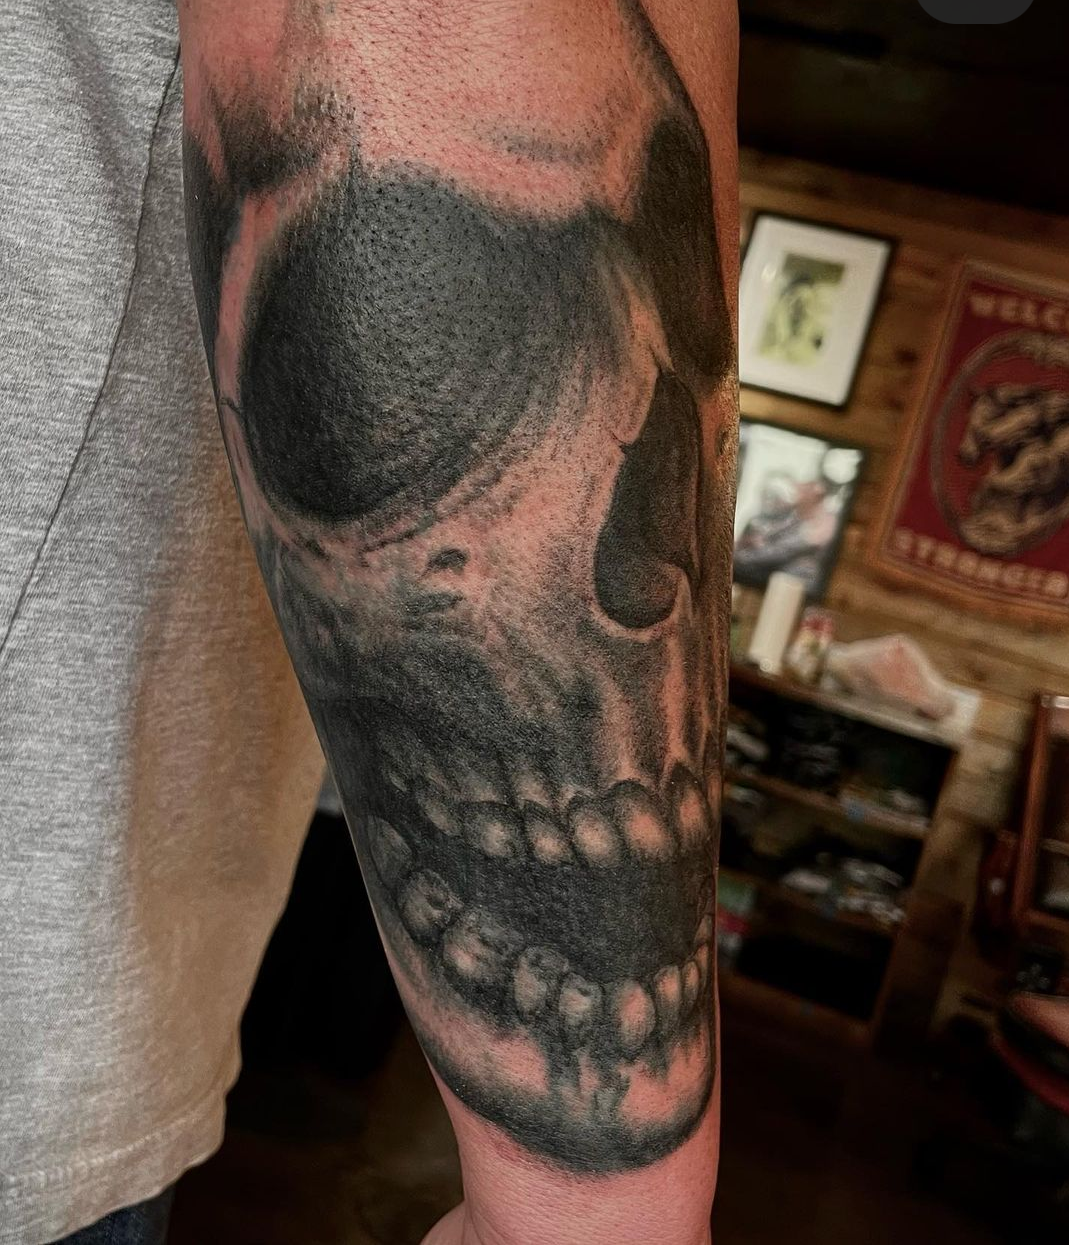 Tattoo of a skull from best tattoo artist in dallas